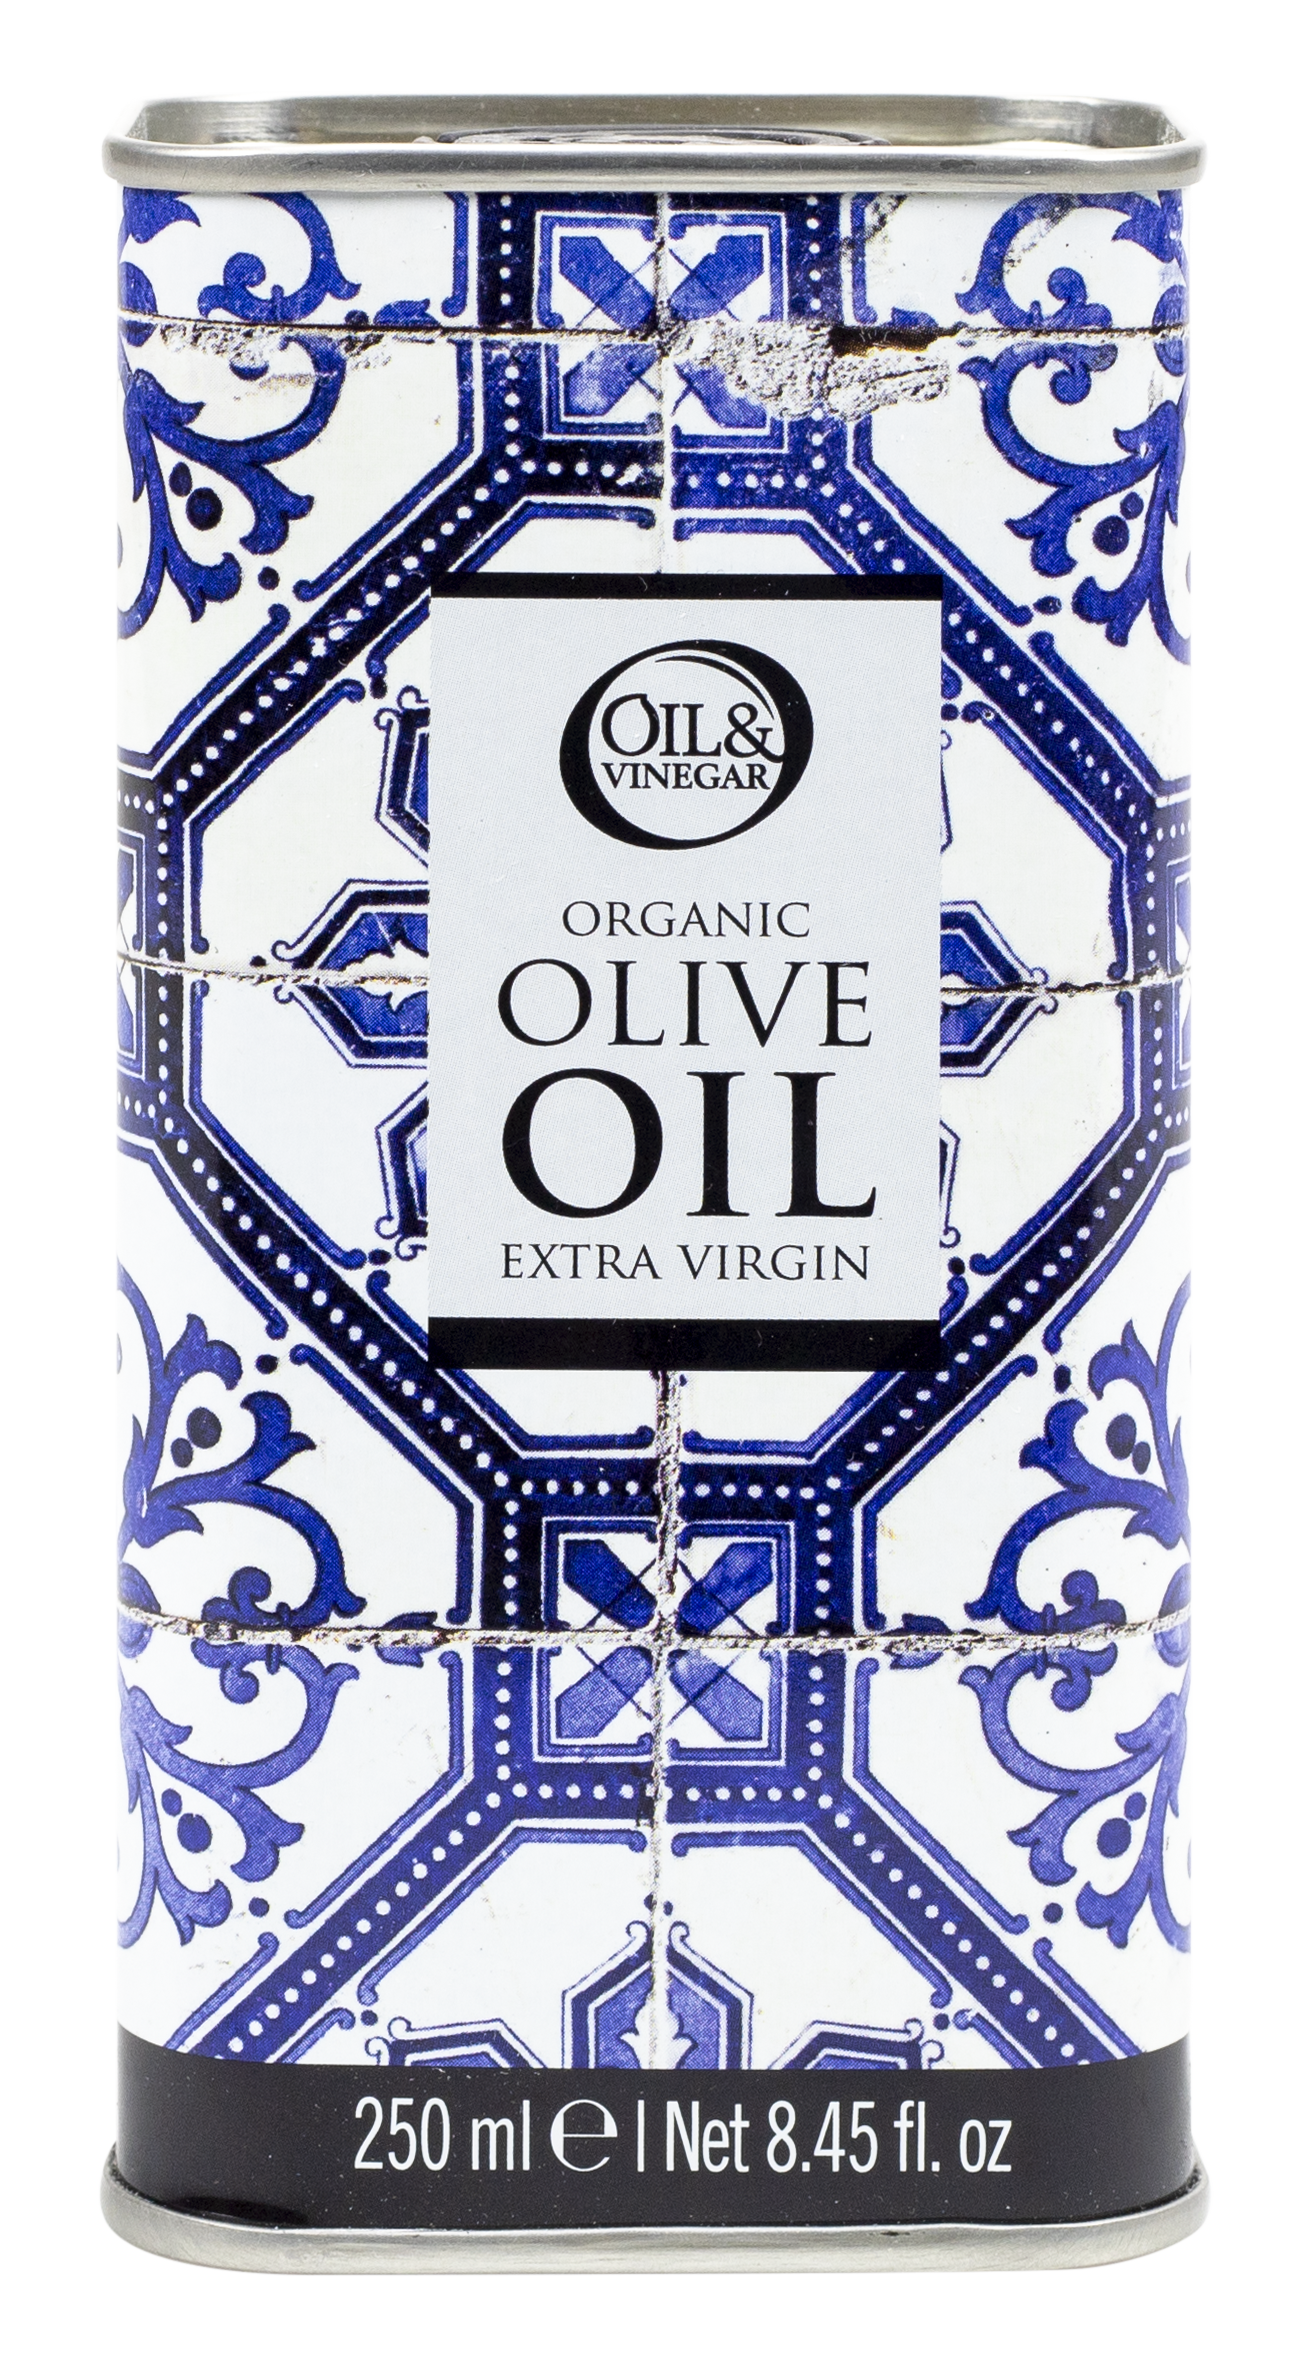 Huile d'olive extra vierge biologique en boîte design bleu (250ml) - €9.95